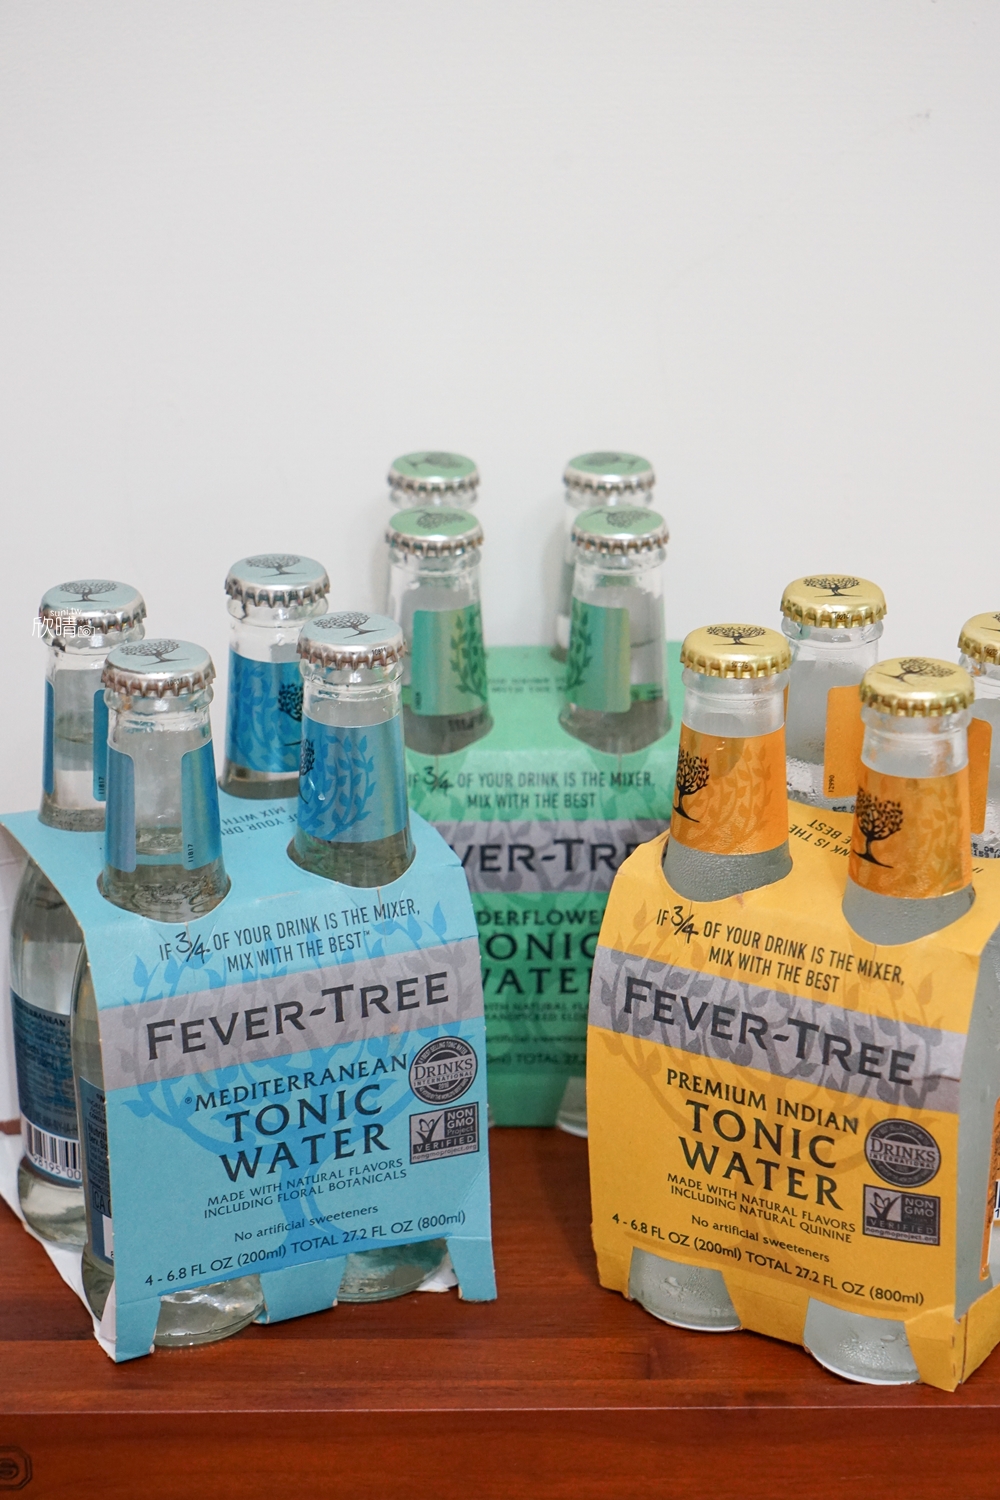 Fever tree芬味樹通寧水｜與市售最常見的舒味思通寧水~價位/氣泡比較